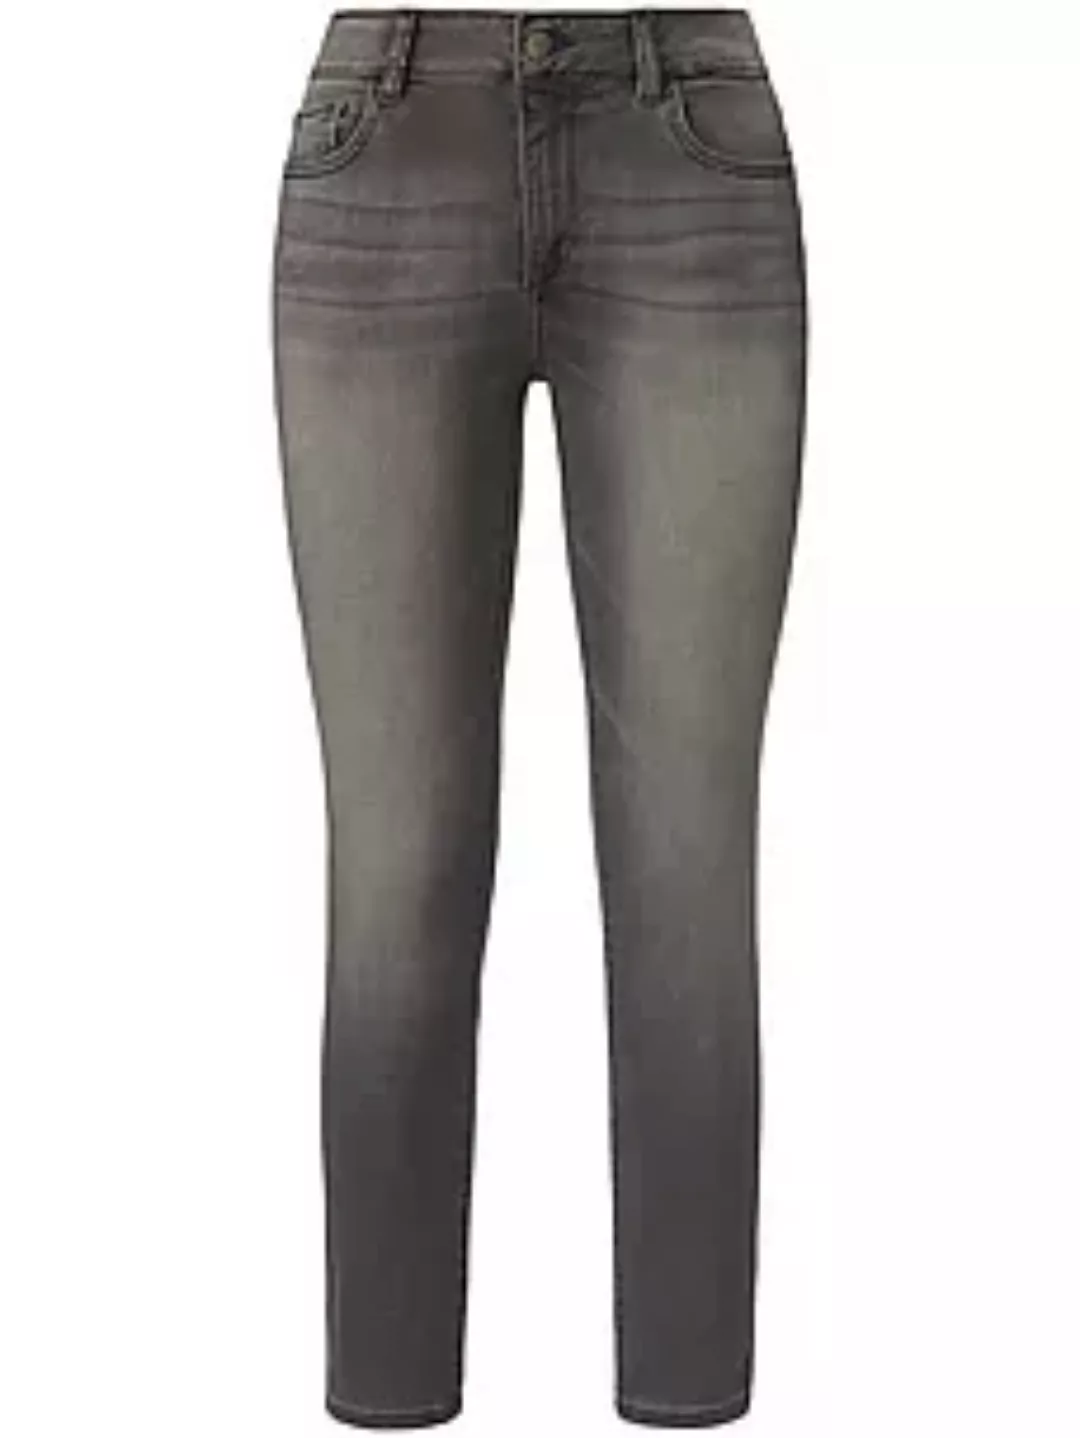 Knöchellange 7/8-Jeans Modell Florence DL1961 denim günstig online kaufen